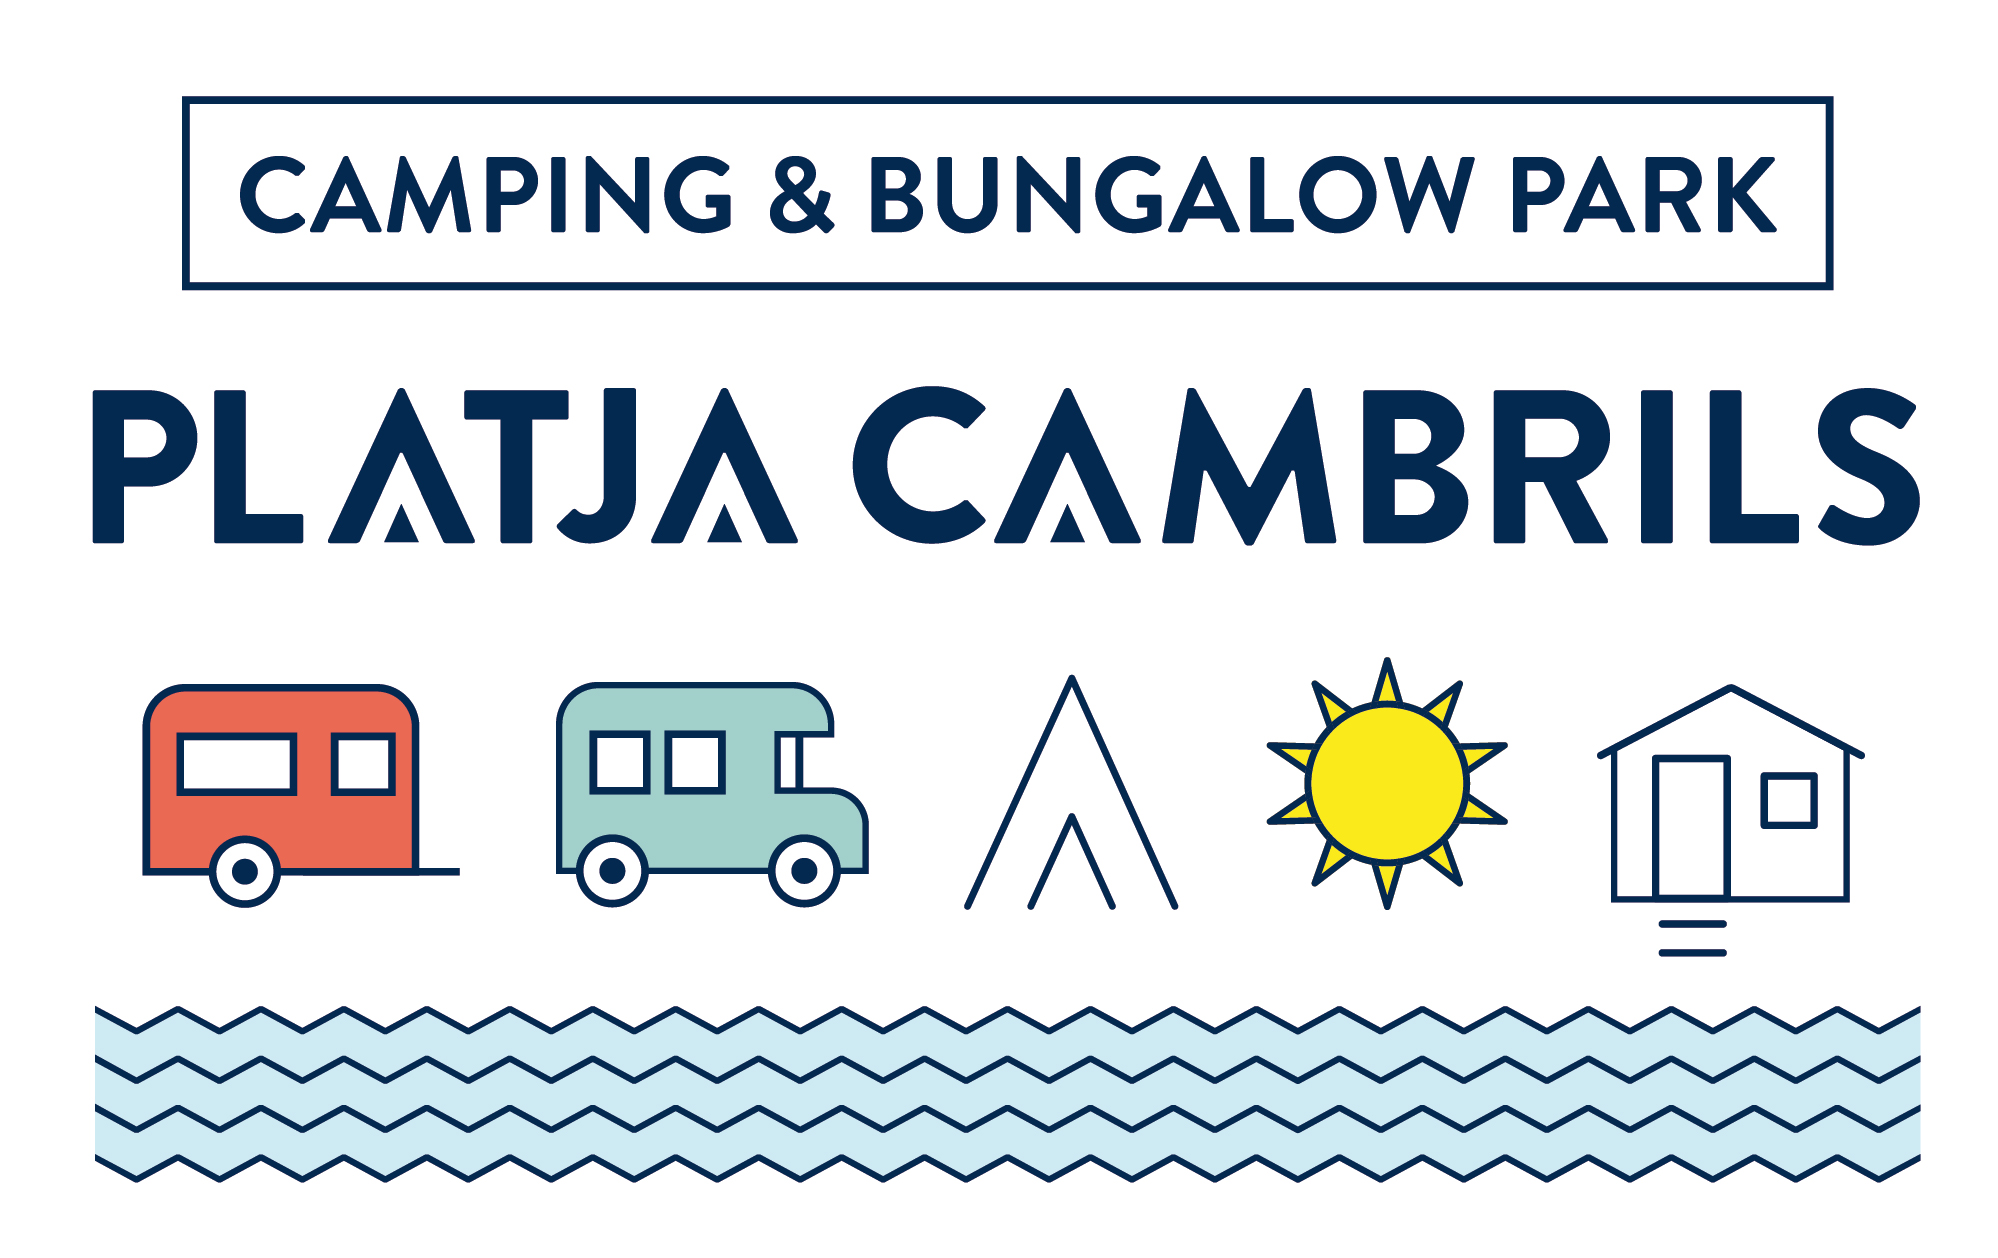 Camping Platja Cambrils